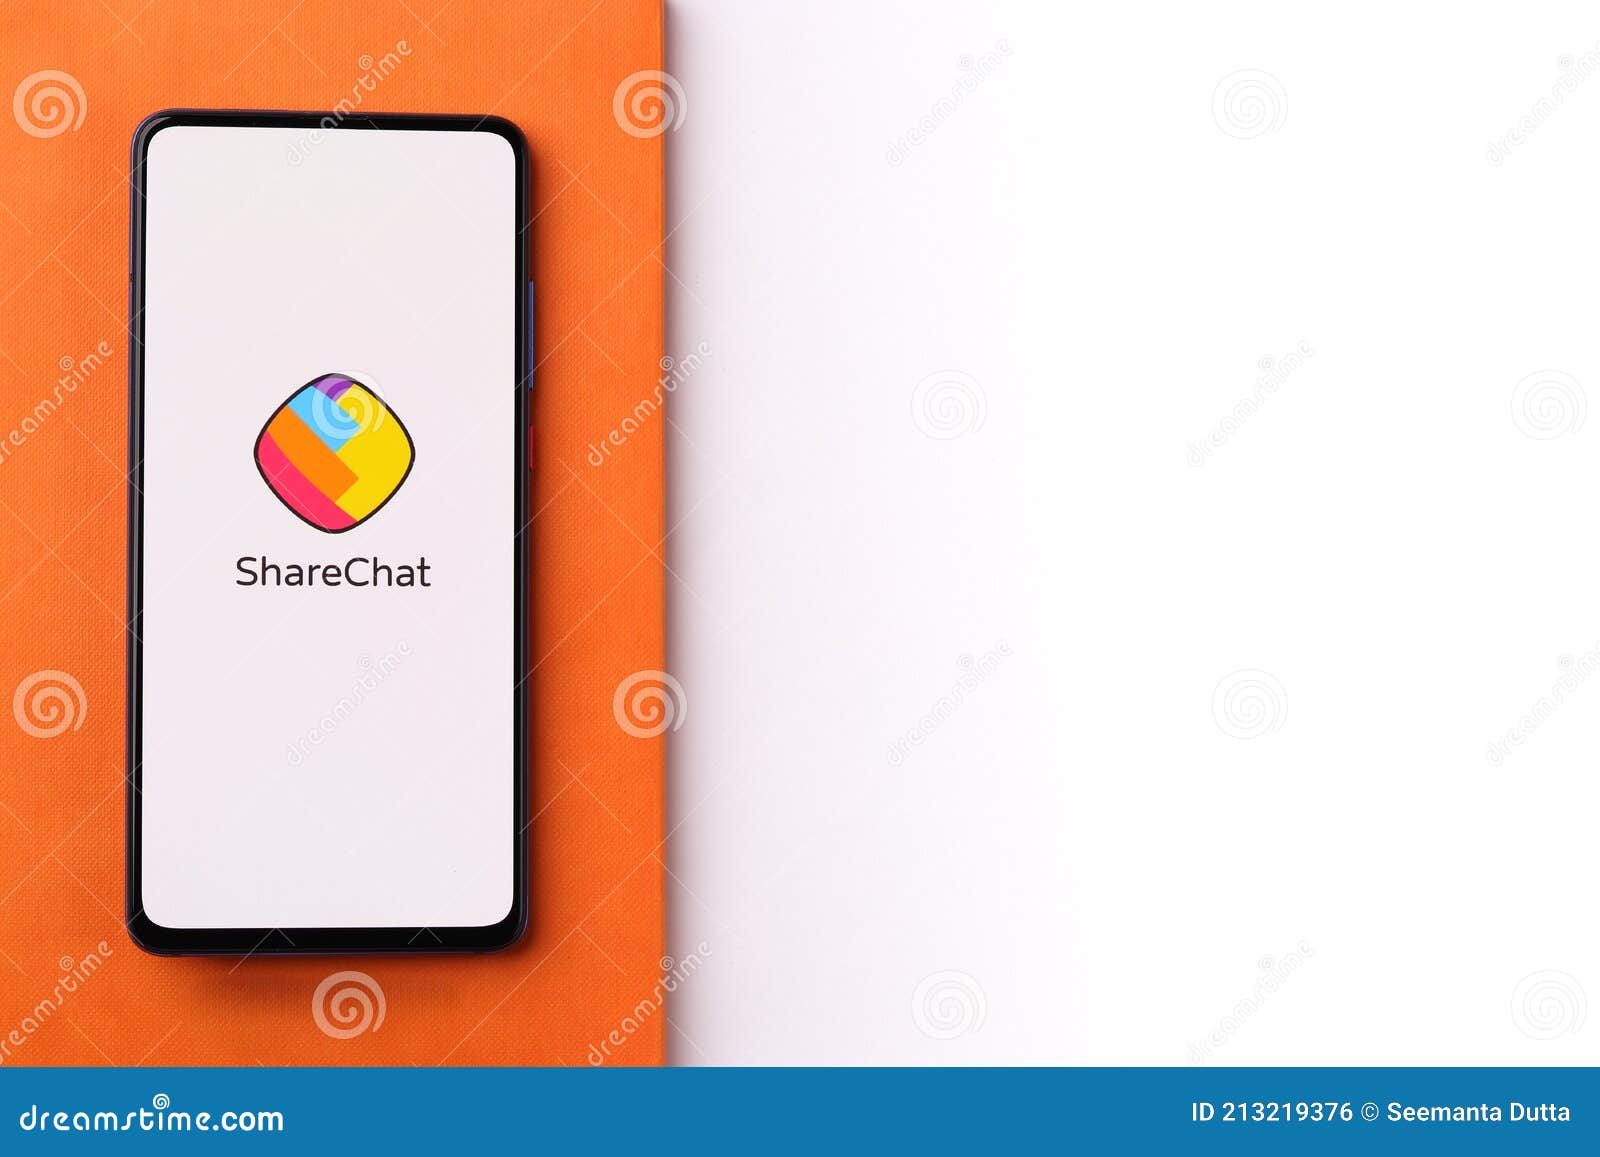 Moj, ShareChat parent firm Mohalla Tech raises $266 million